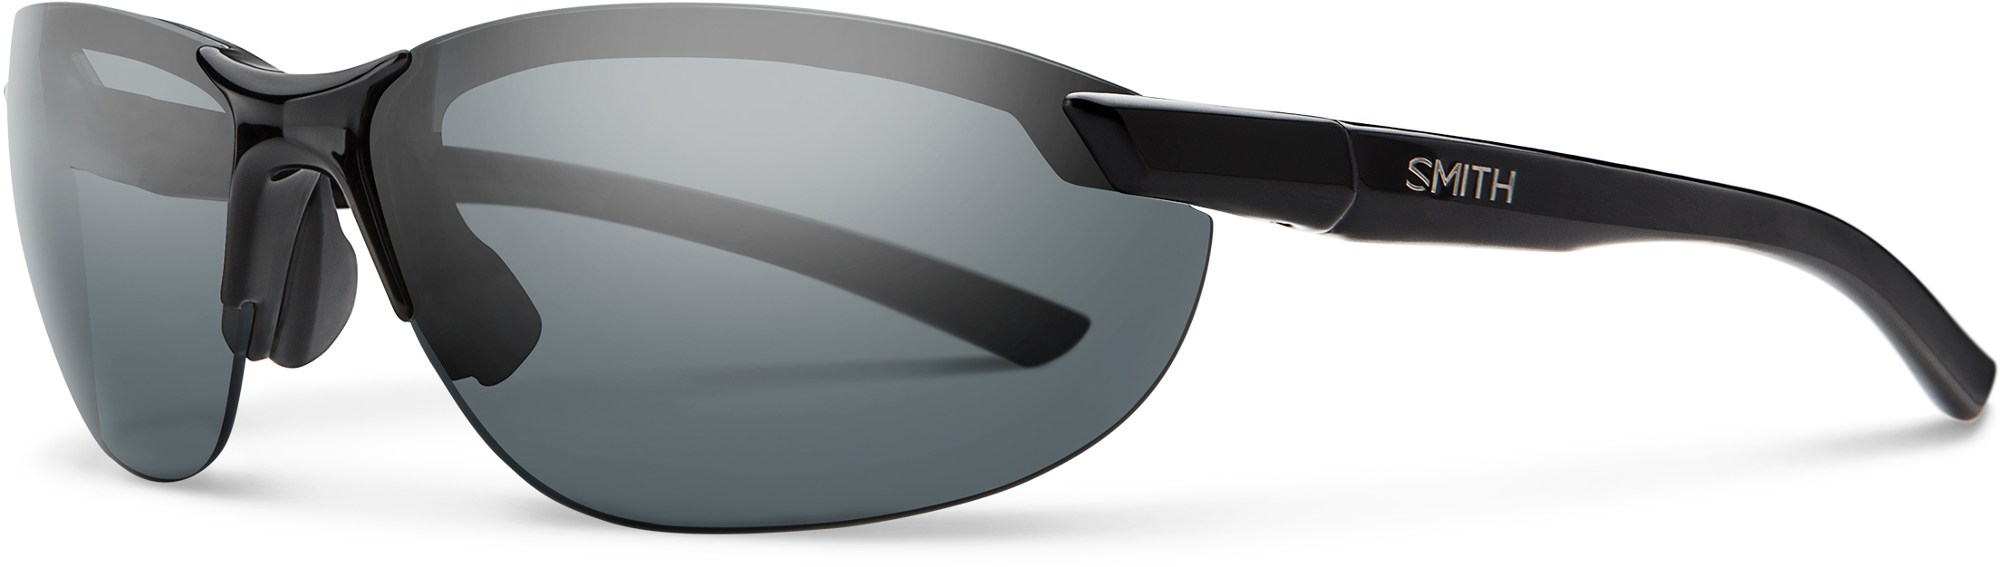 Поляризованные солнцезащитные очки Parallel 2 Smith, черный шкатулка уилл смит will smith 2